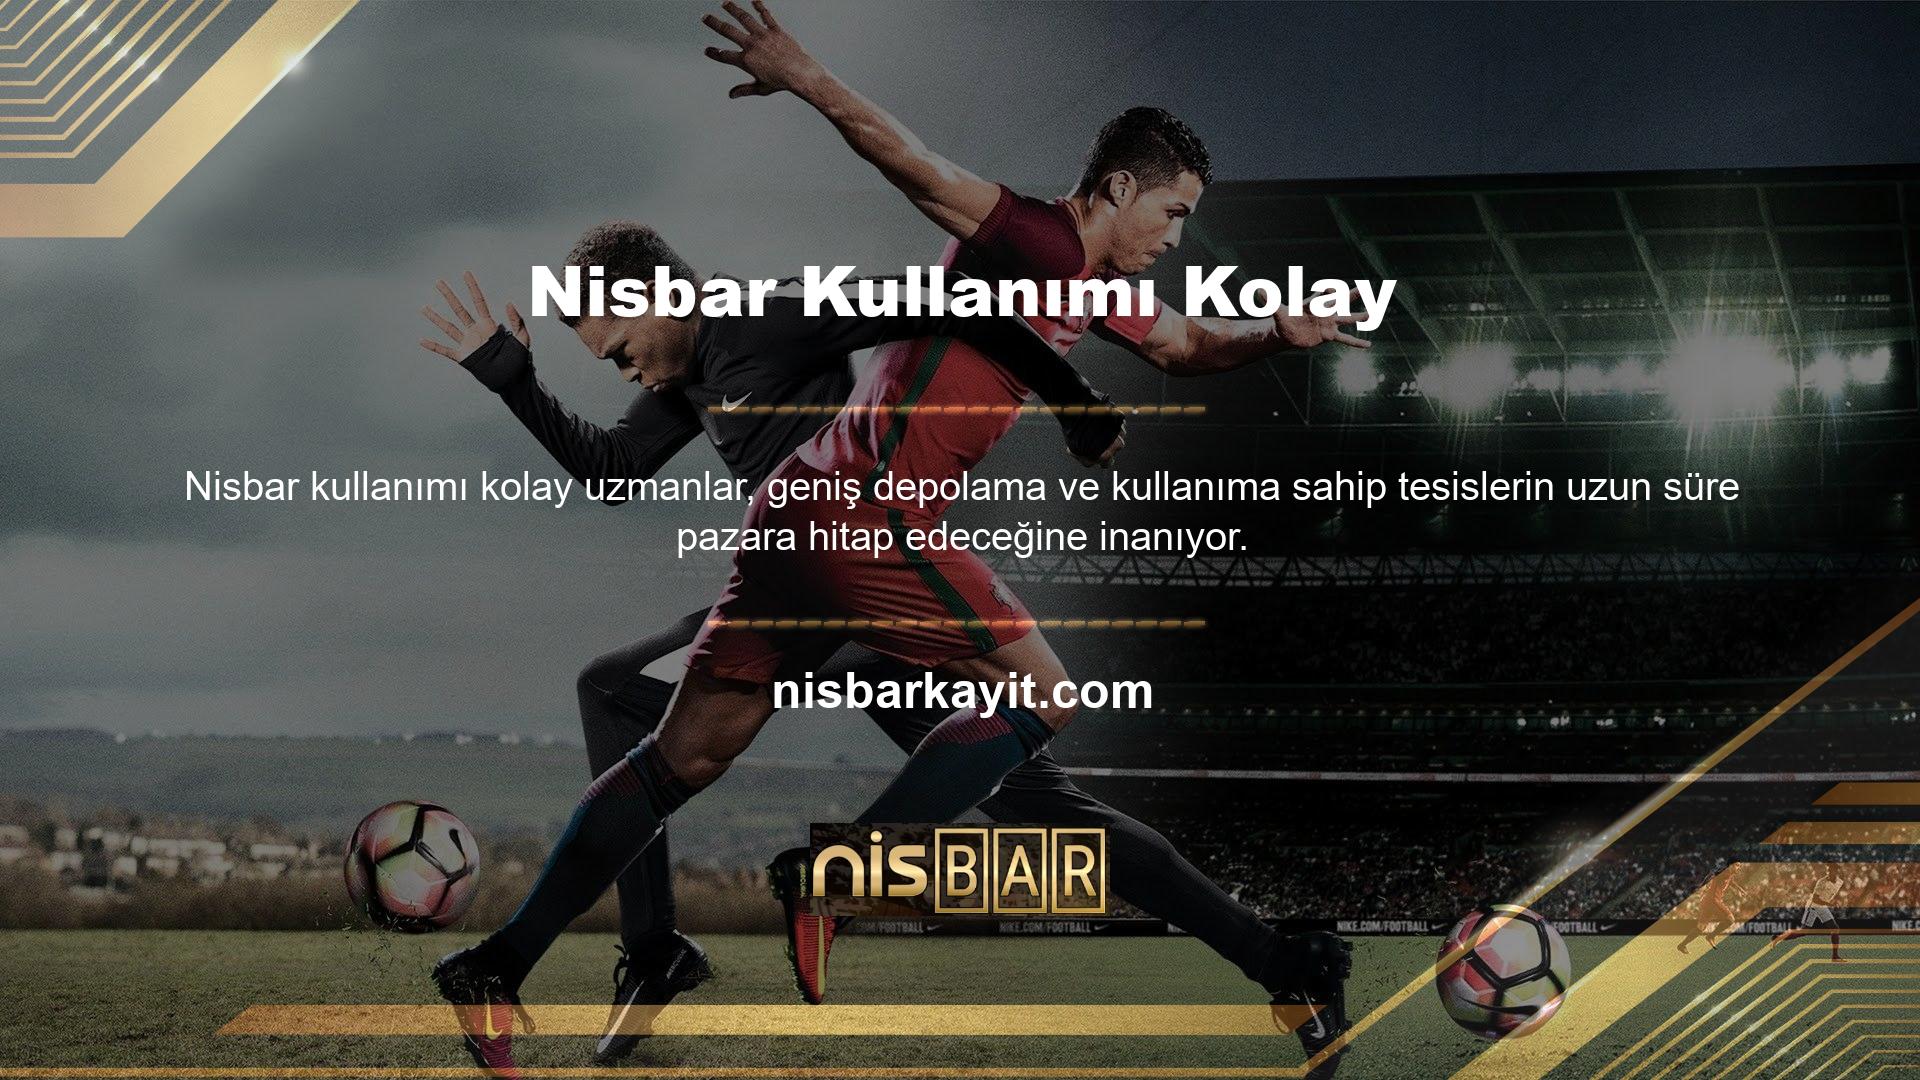 Nisbar, sitenin tüm bölümlerini aktif olarak korumak için 24 saat canlı destek sunuyor